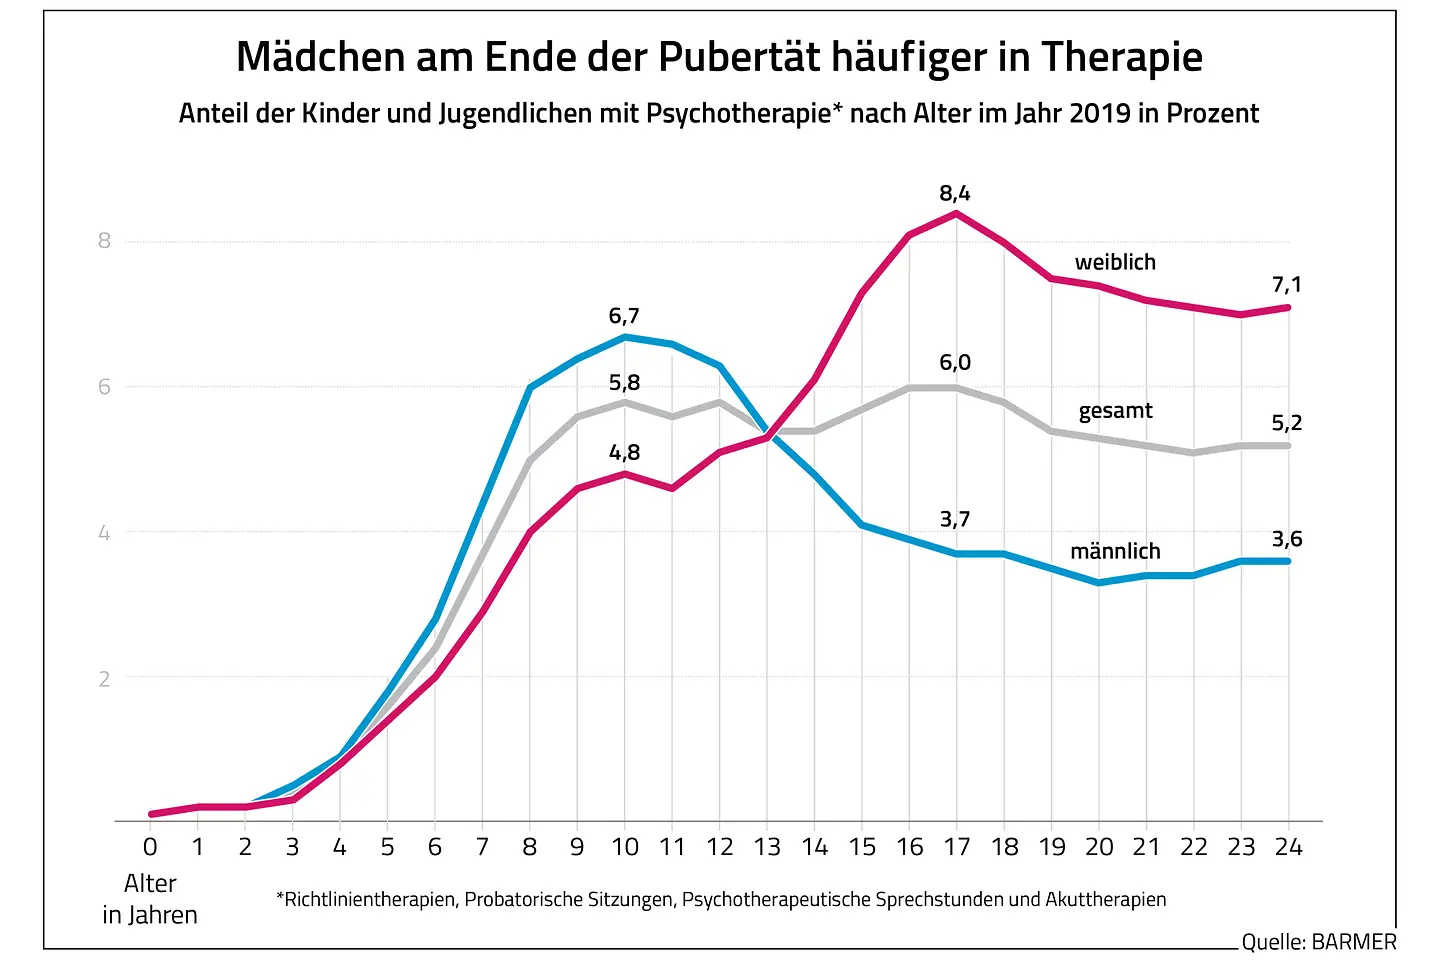 Die Grafik zeigt den Anteil der Kinder und Jugendlichen mit Psychotherapie nach Alter im Jahr 2019 in Prozent.